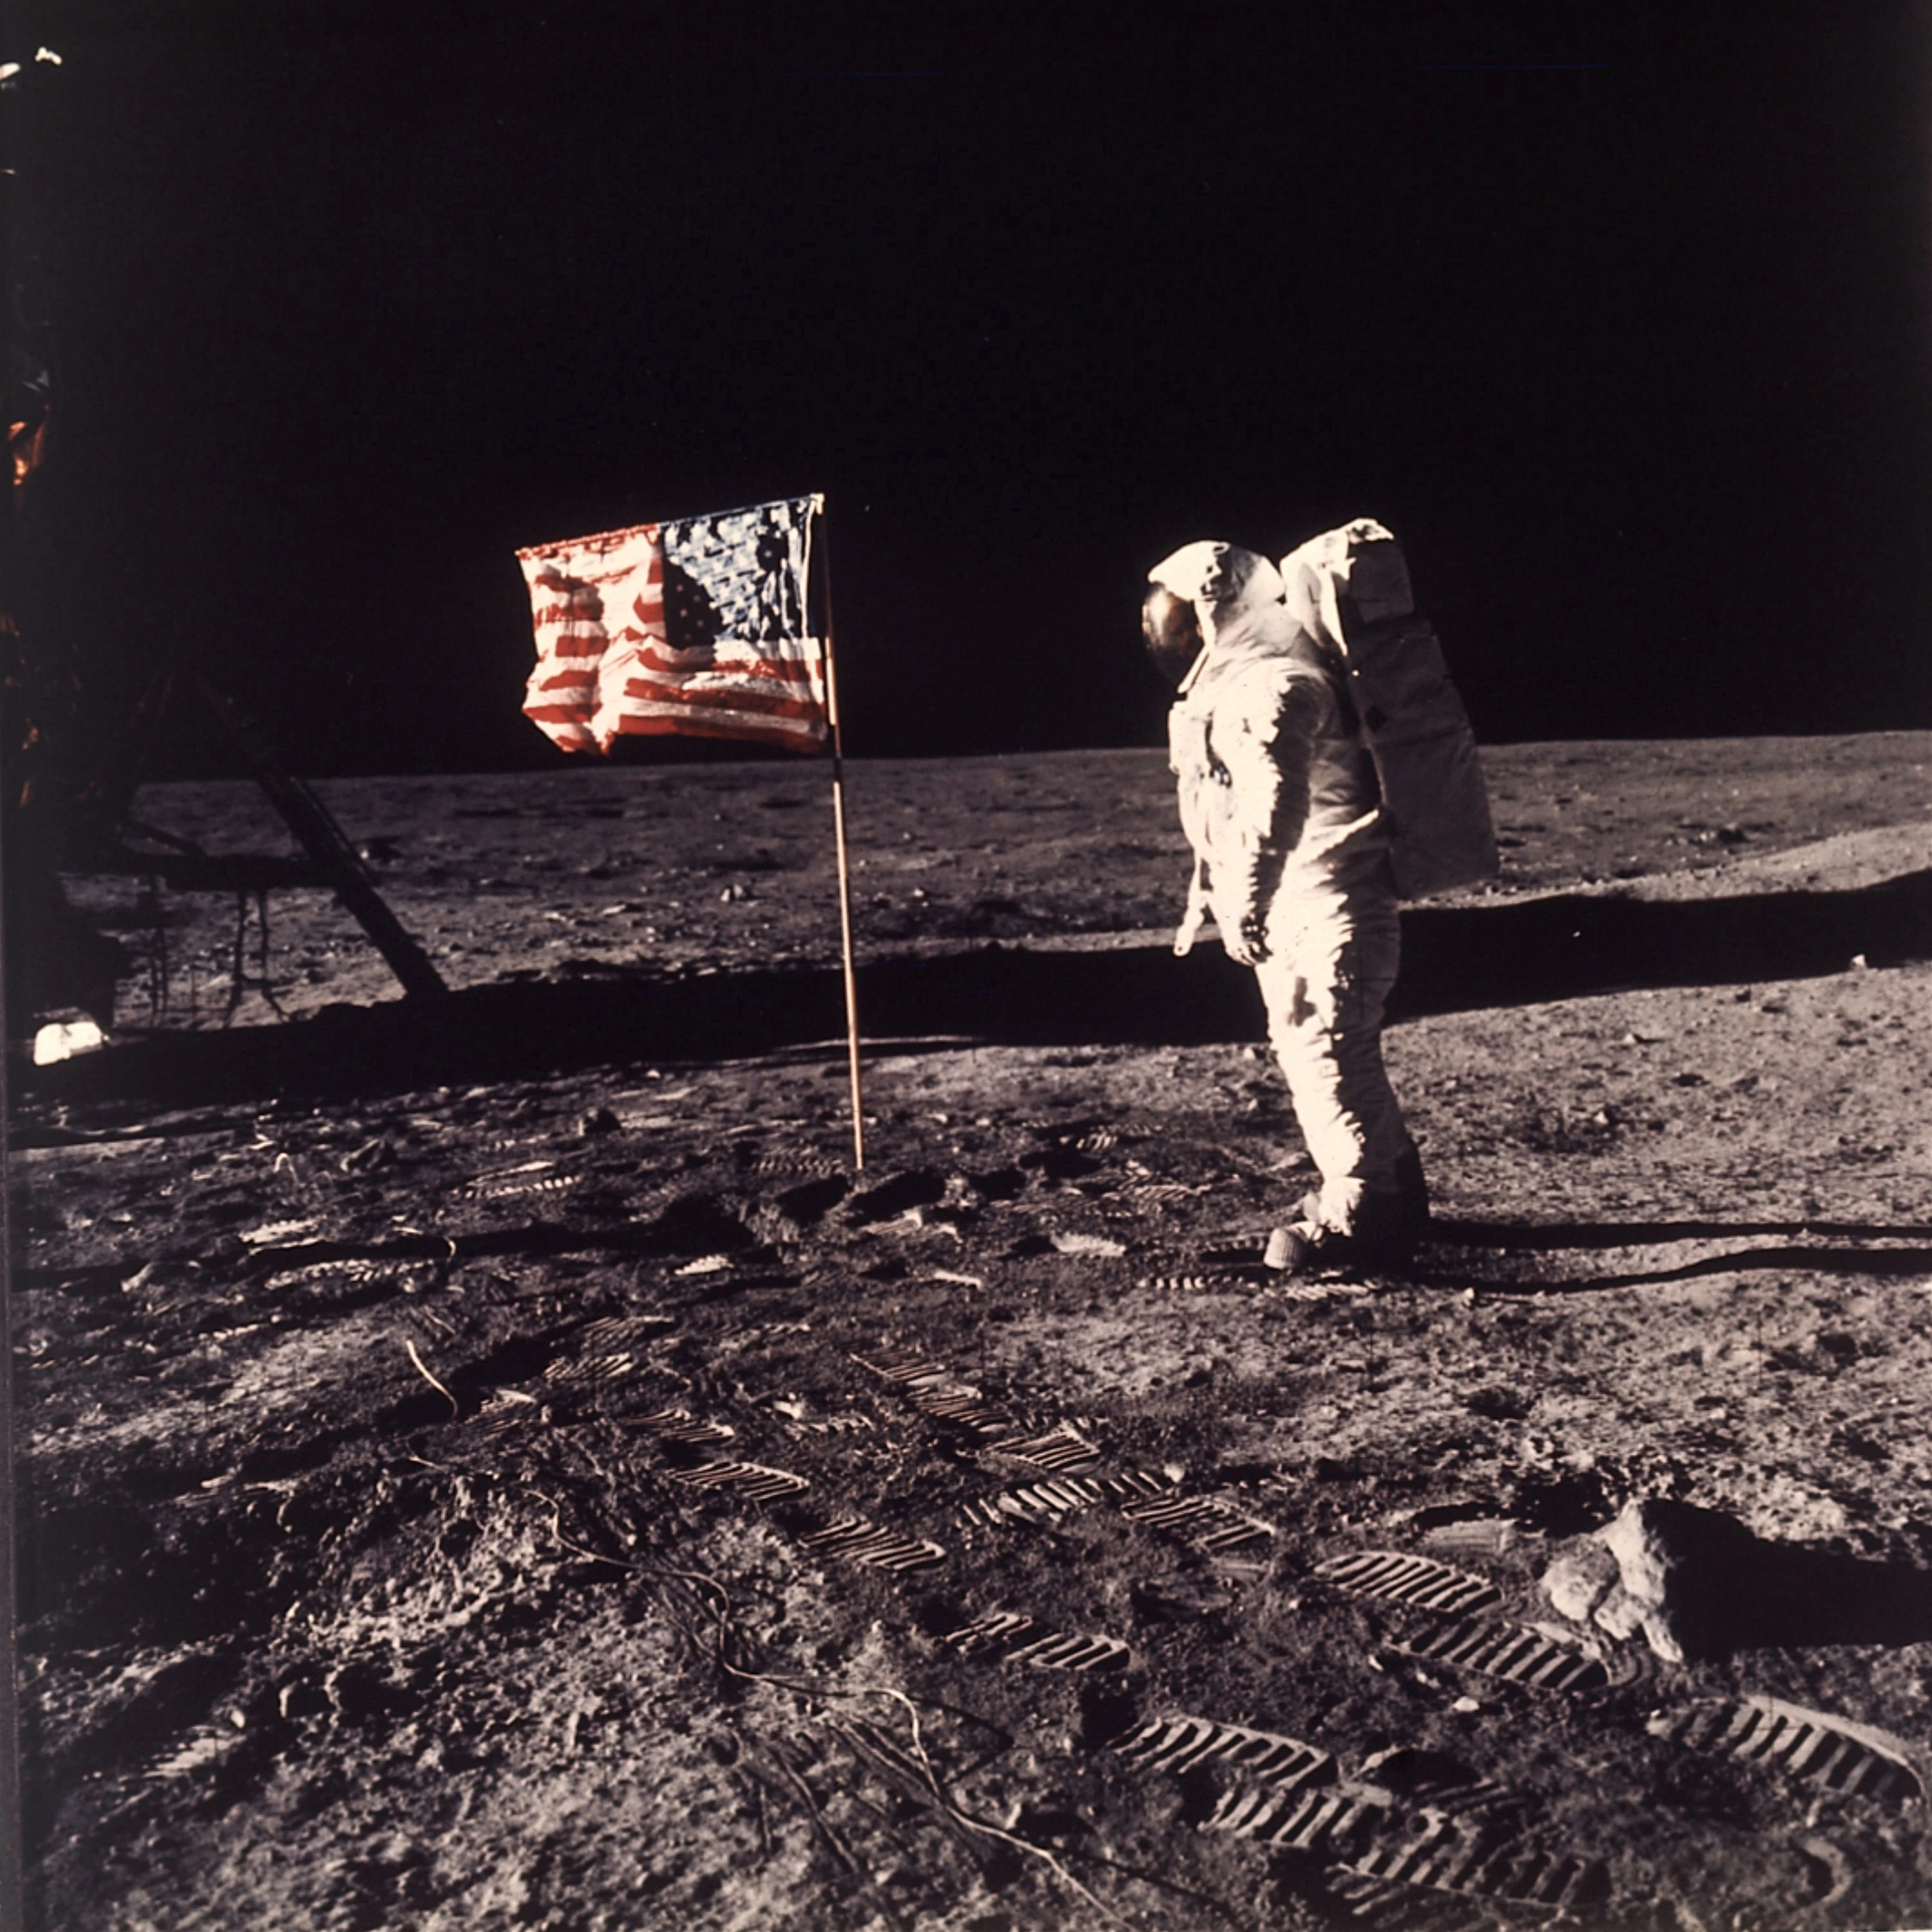 Lądowania na Księżycu nie było? Teorie spiskowe dotyczące misji Apollo 11 -  Dziennik.pl